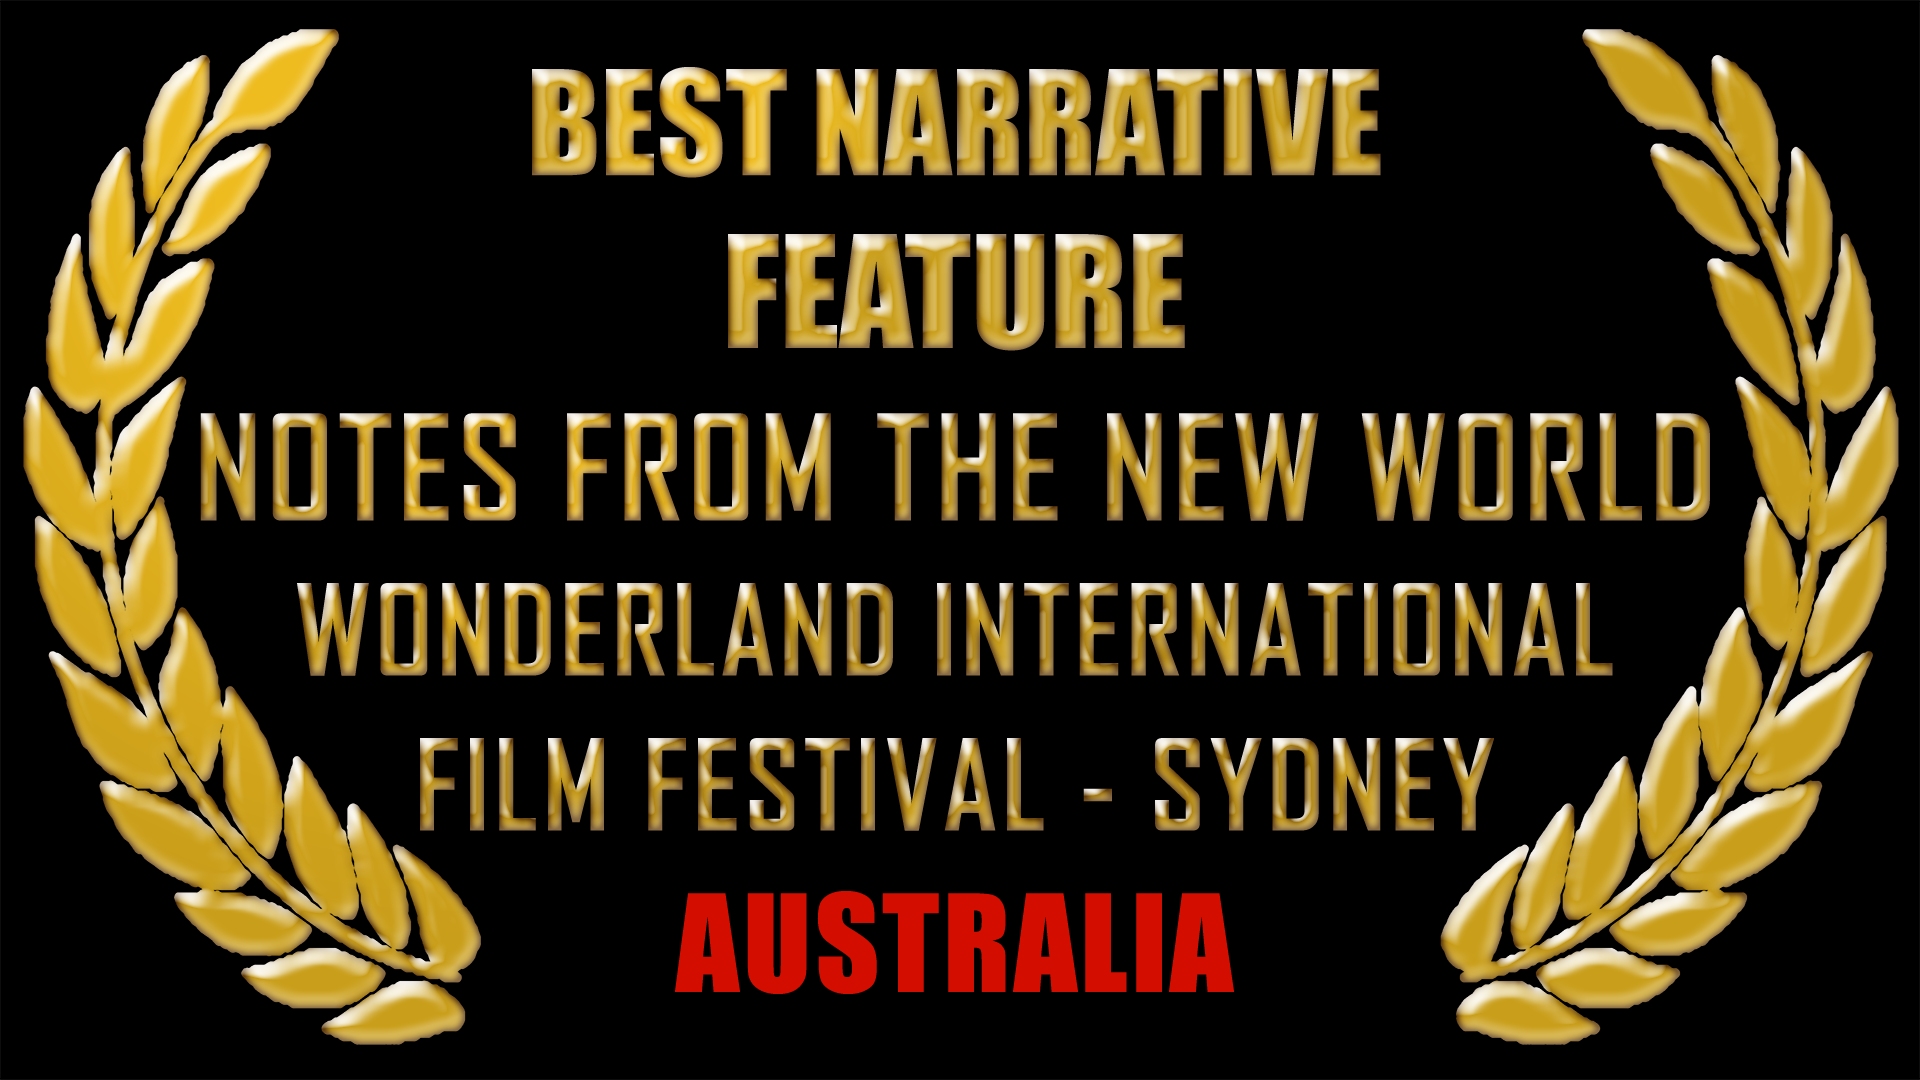 Best Narrative Feature, Australia